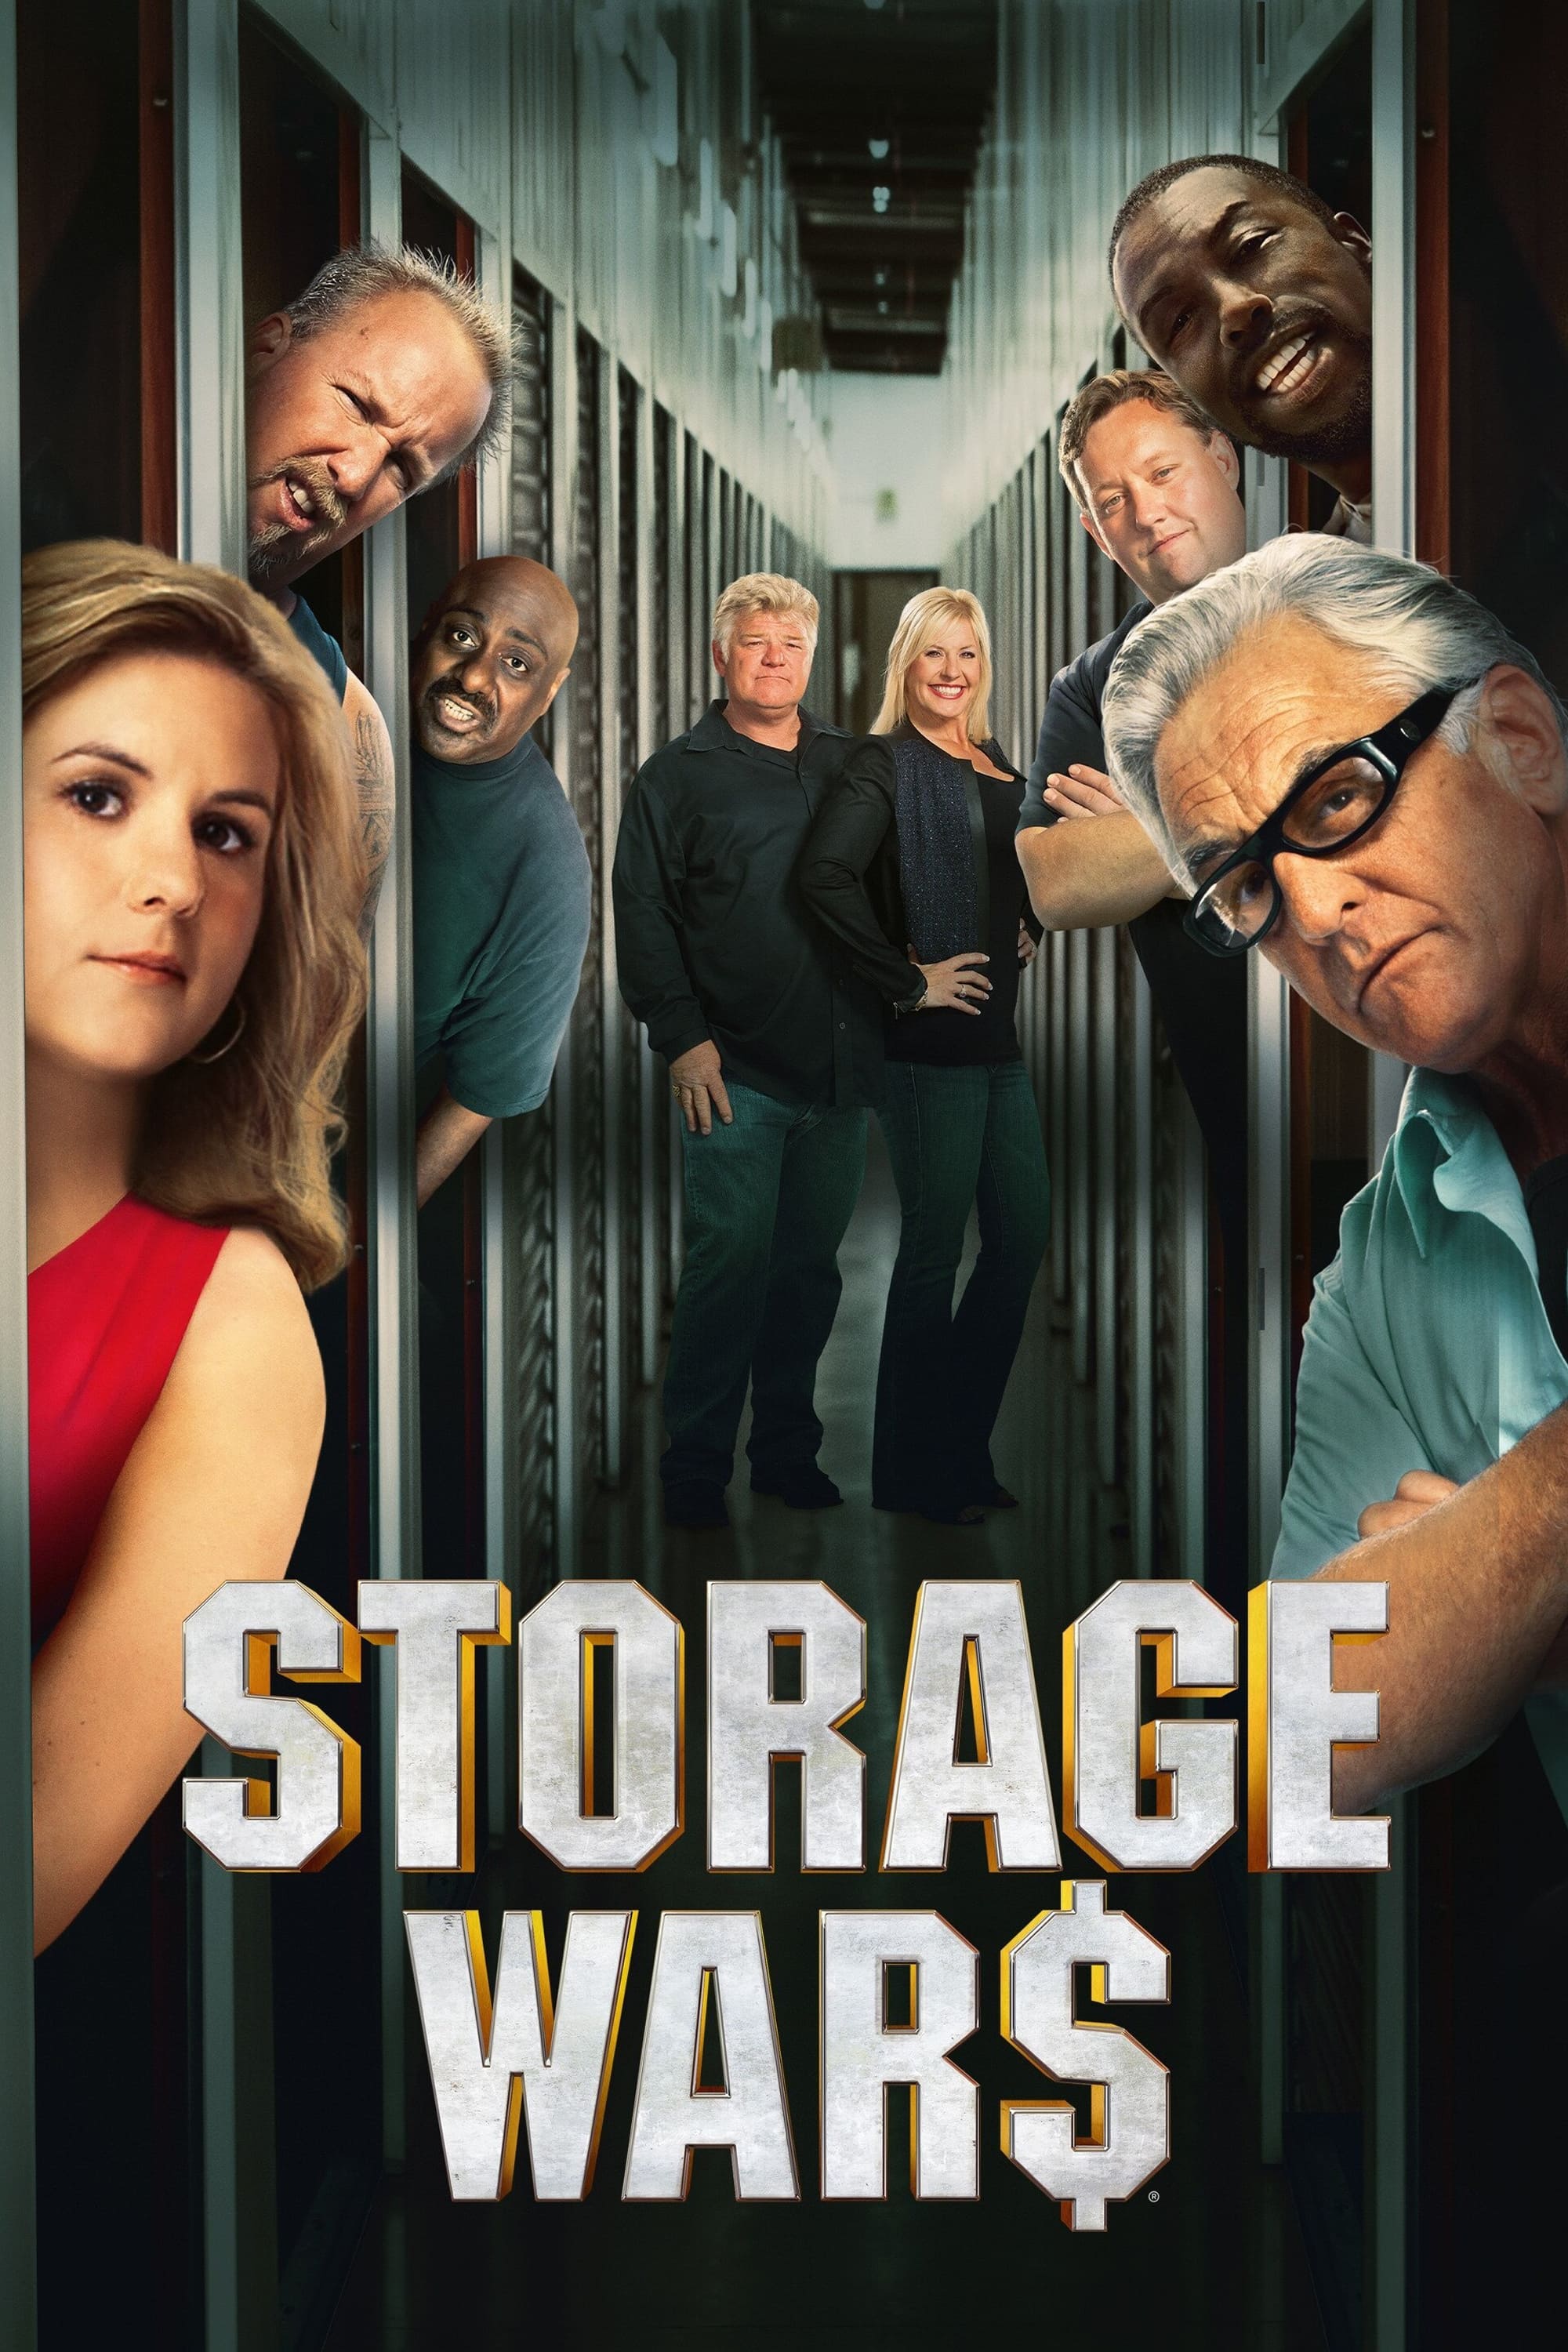 Storage Wars (2010)